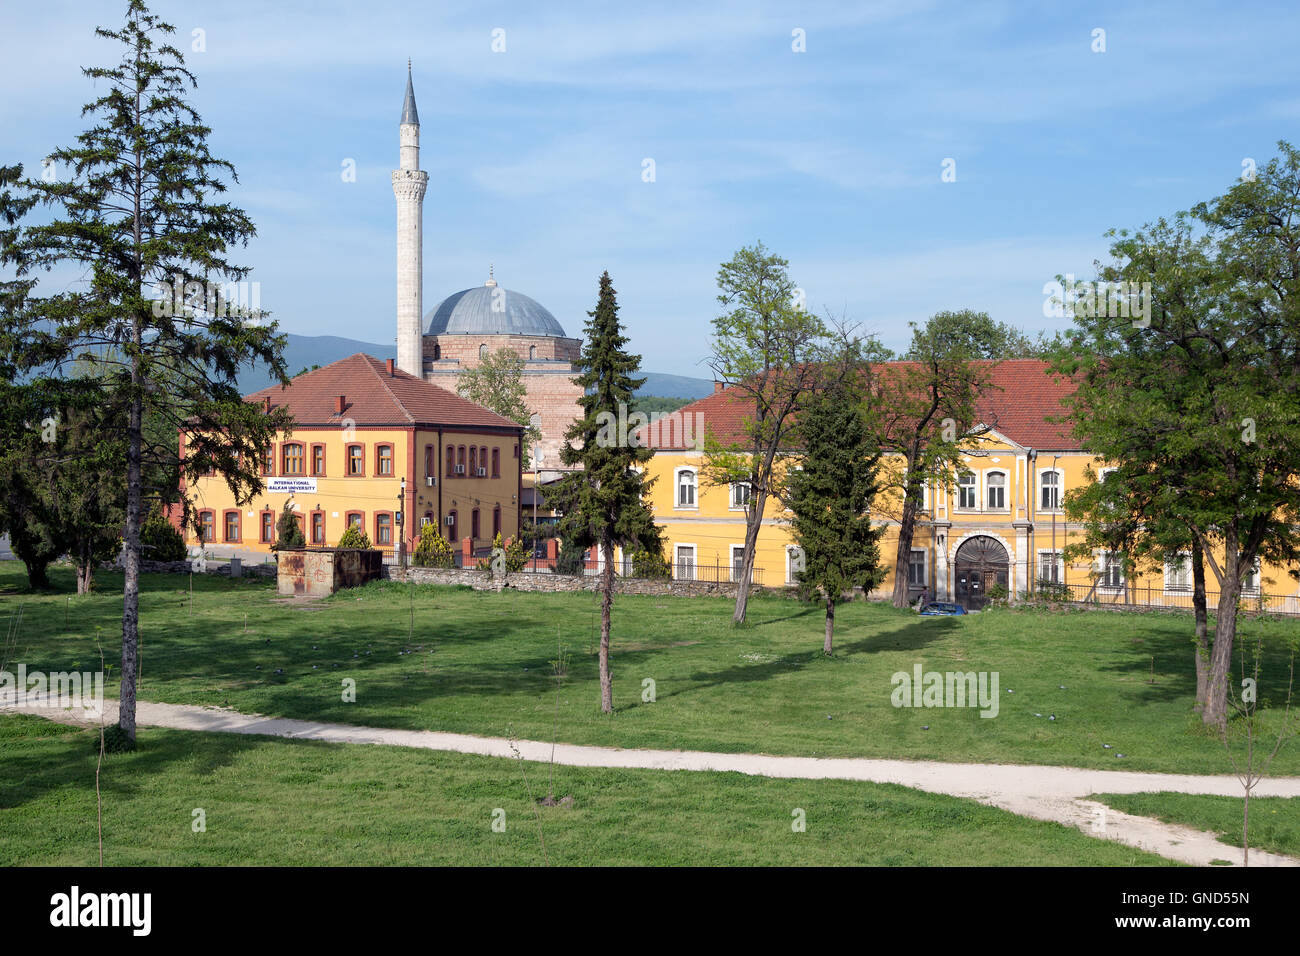 Il castello di Skopje park : internazionale nei Balcani e l Università Mustafa Pasha moschea Foto Stock